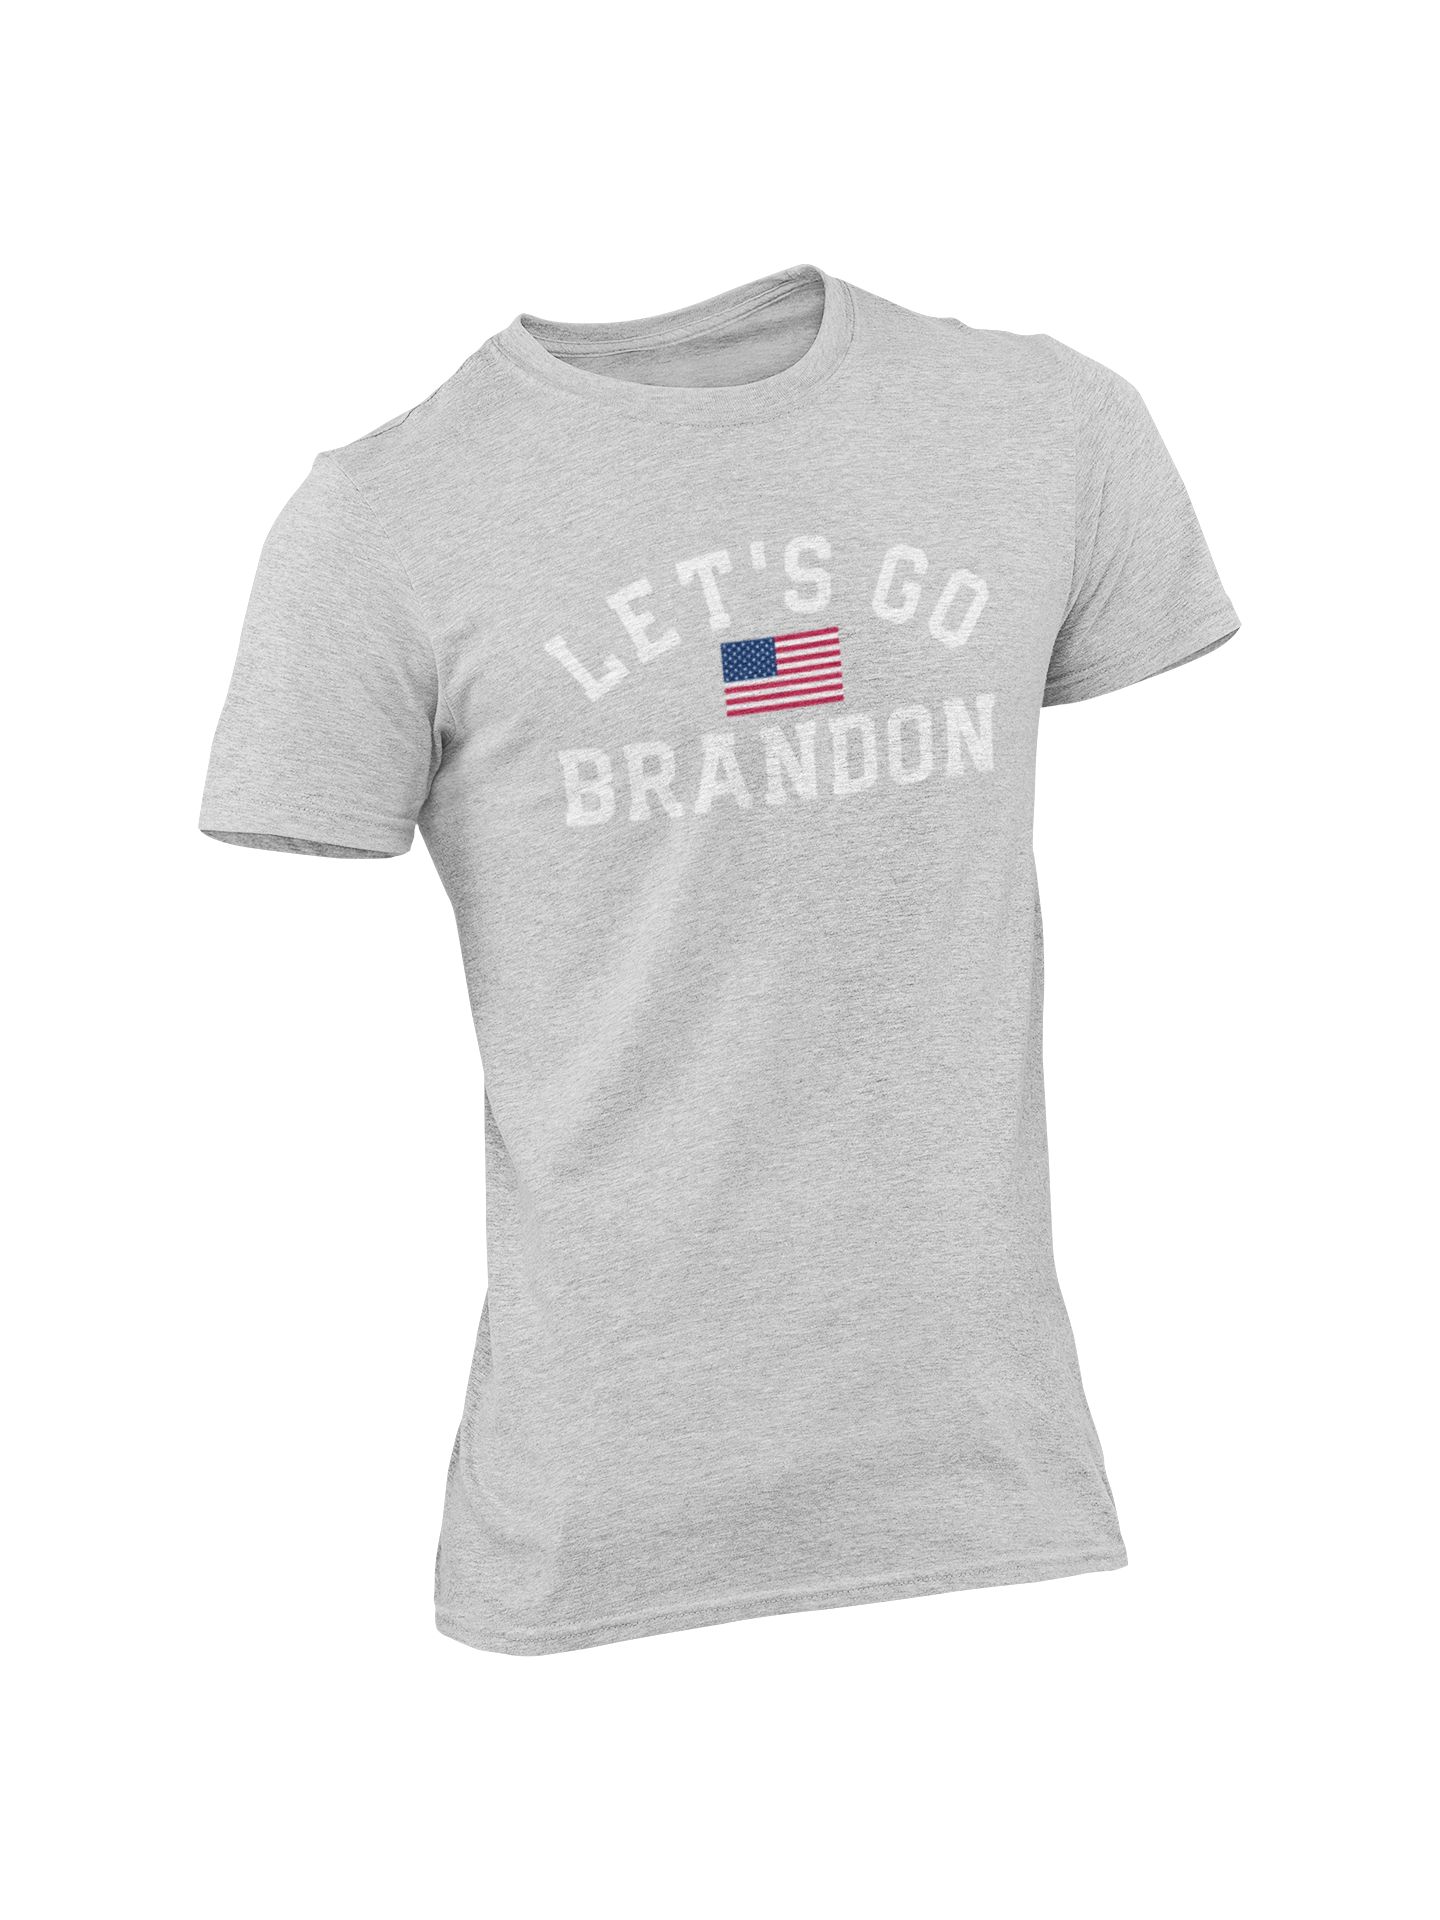 Let's Go Brandon! T-Shirt Men's